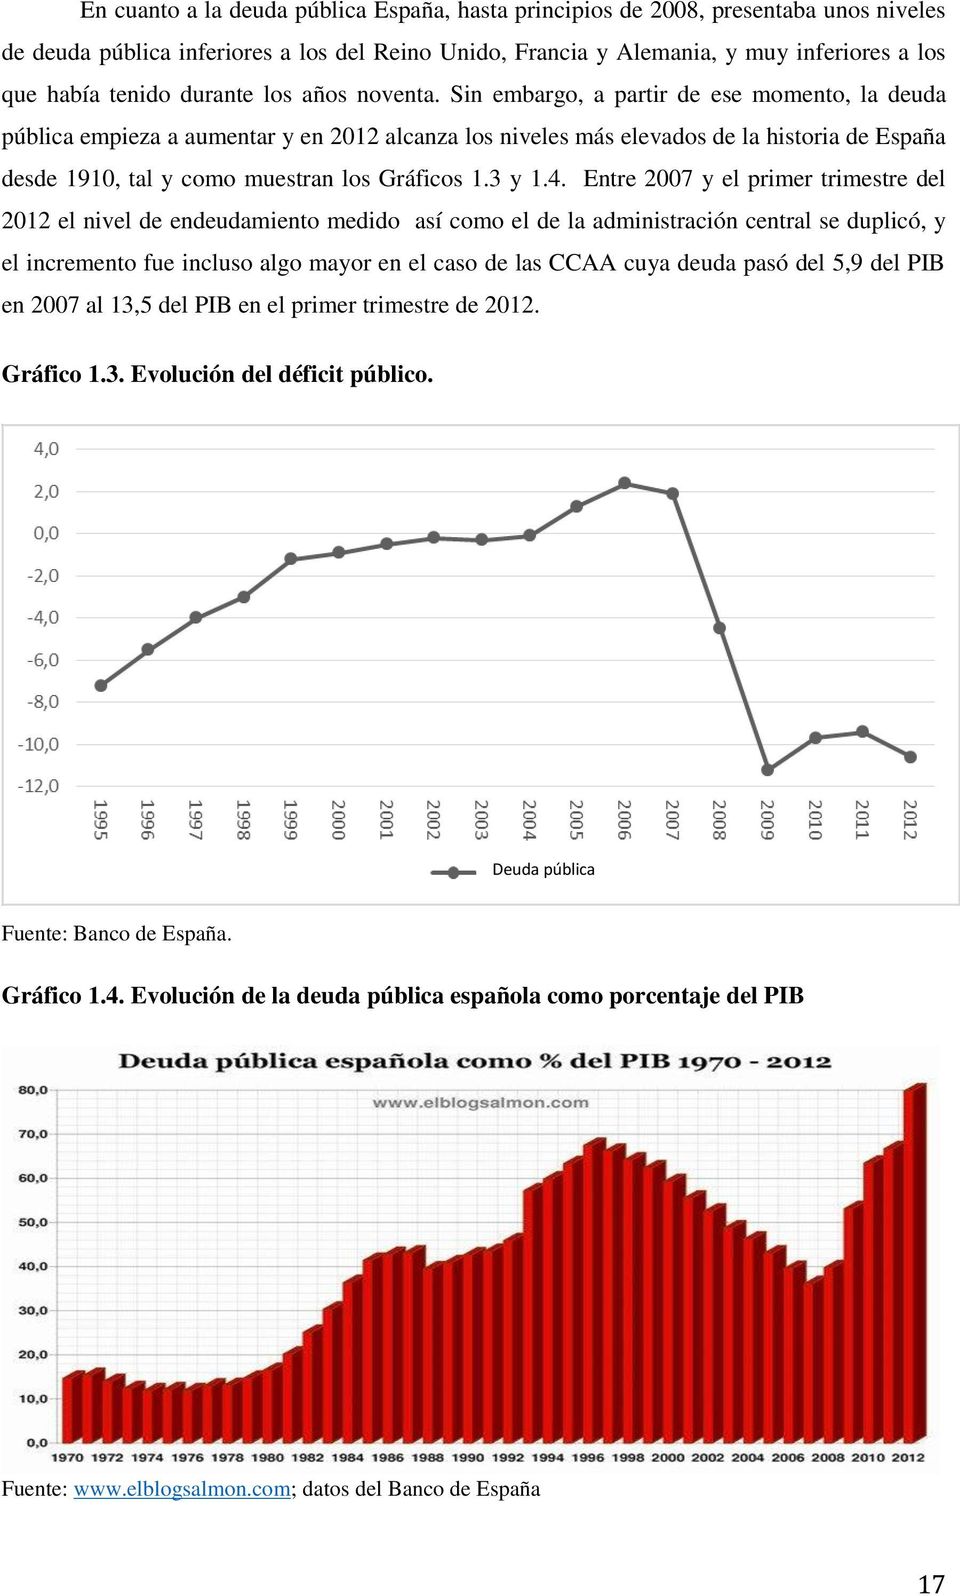 Sin embargo, a partir de ese momento, la deuda pública empieza a aumentar y en 2012 alcanza los niveles más elevados de la historia de España desde 1910, tal y como muestran los Gráficos 1.3 y 1.4.